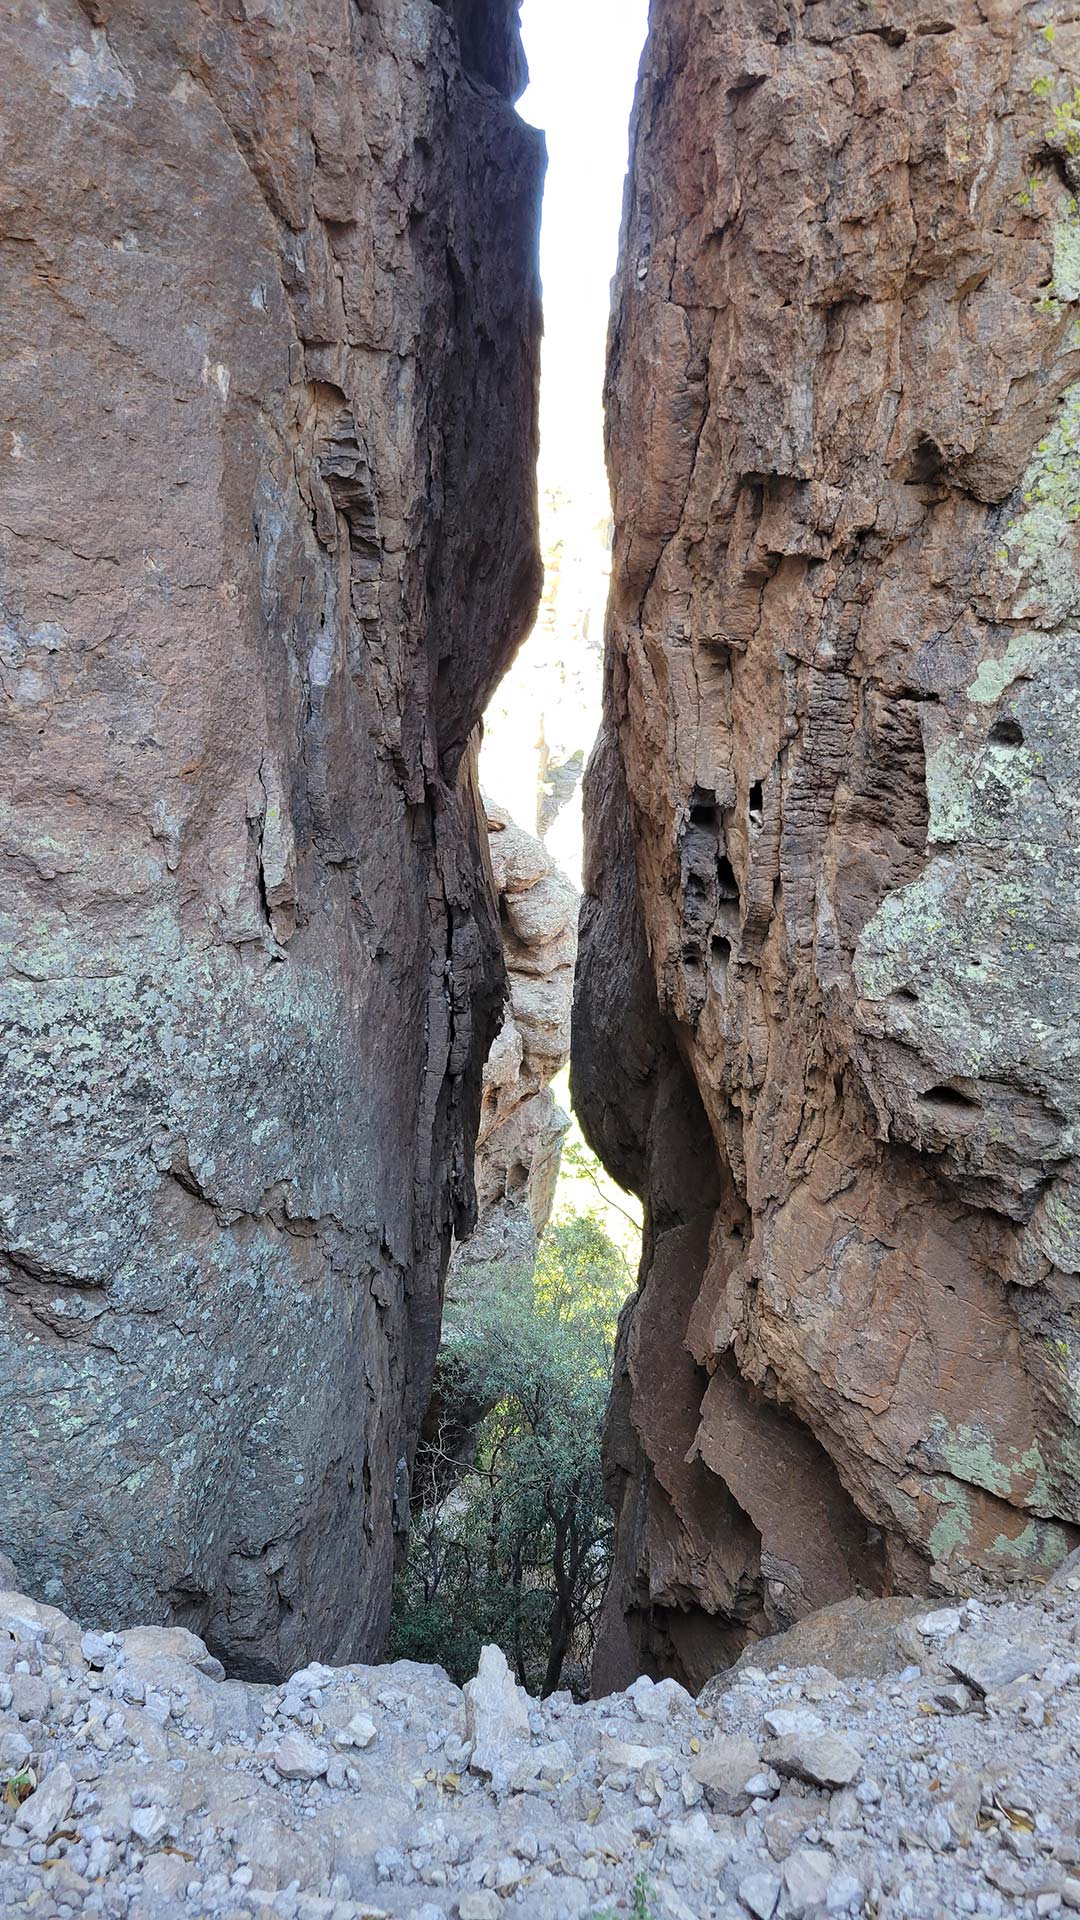 Chiricahua gap